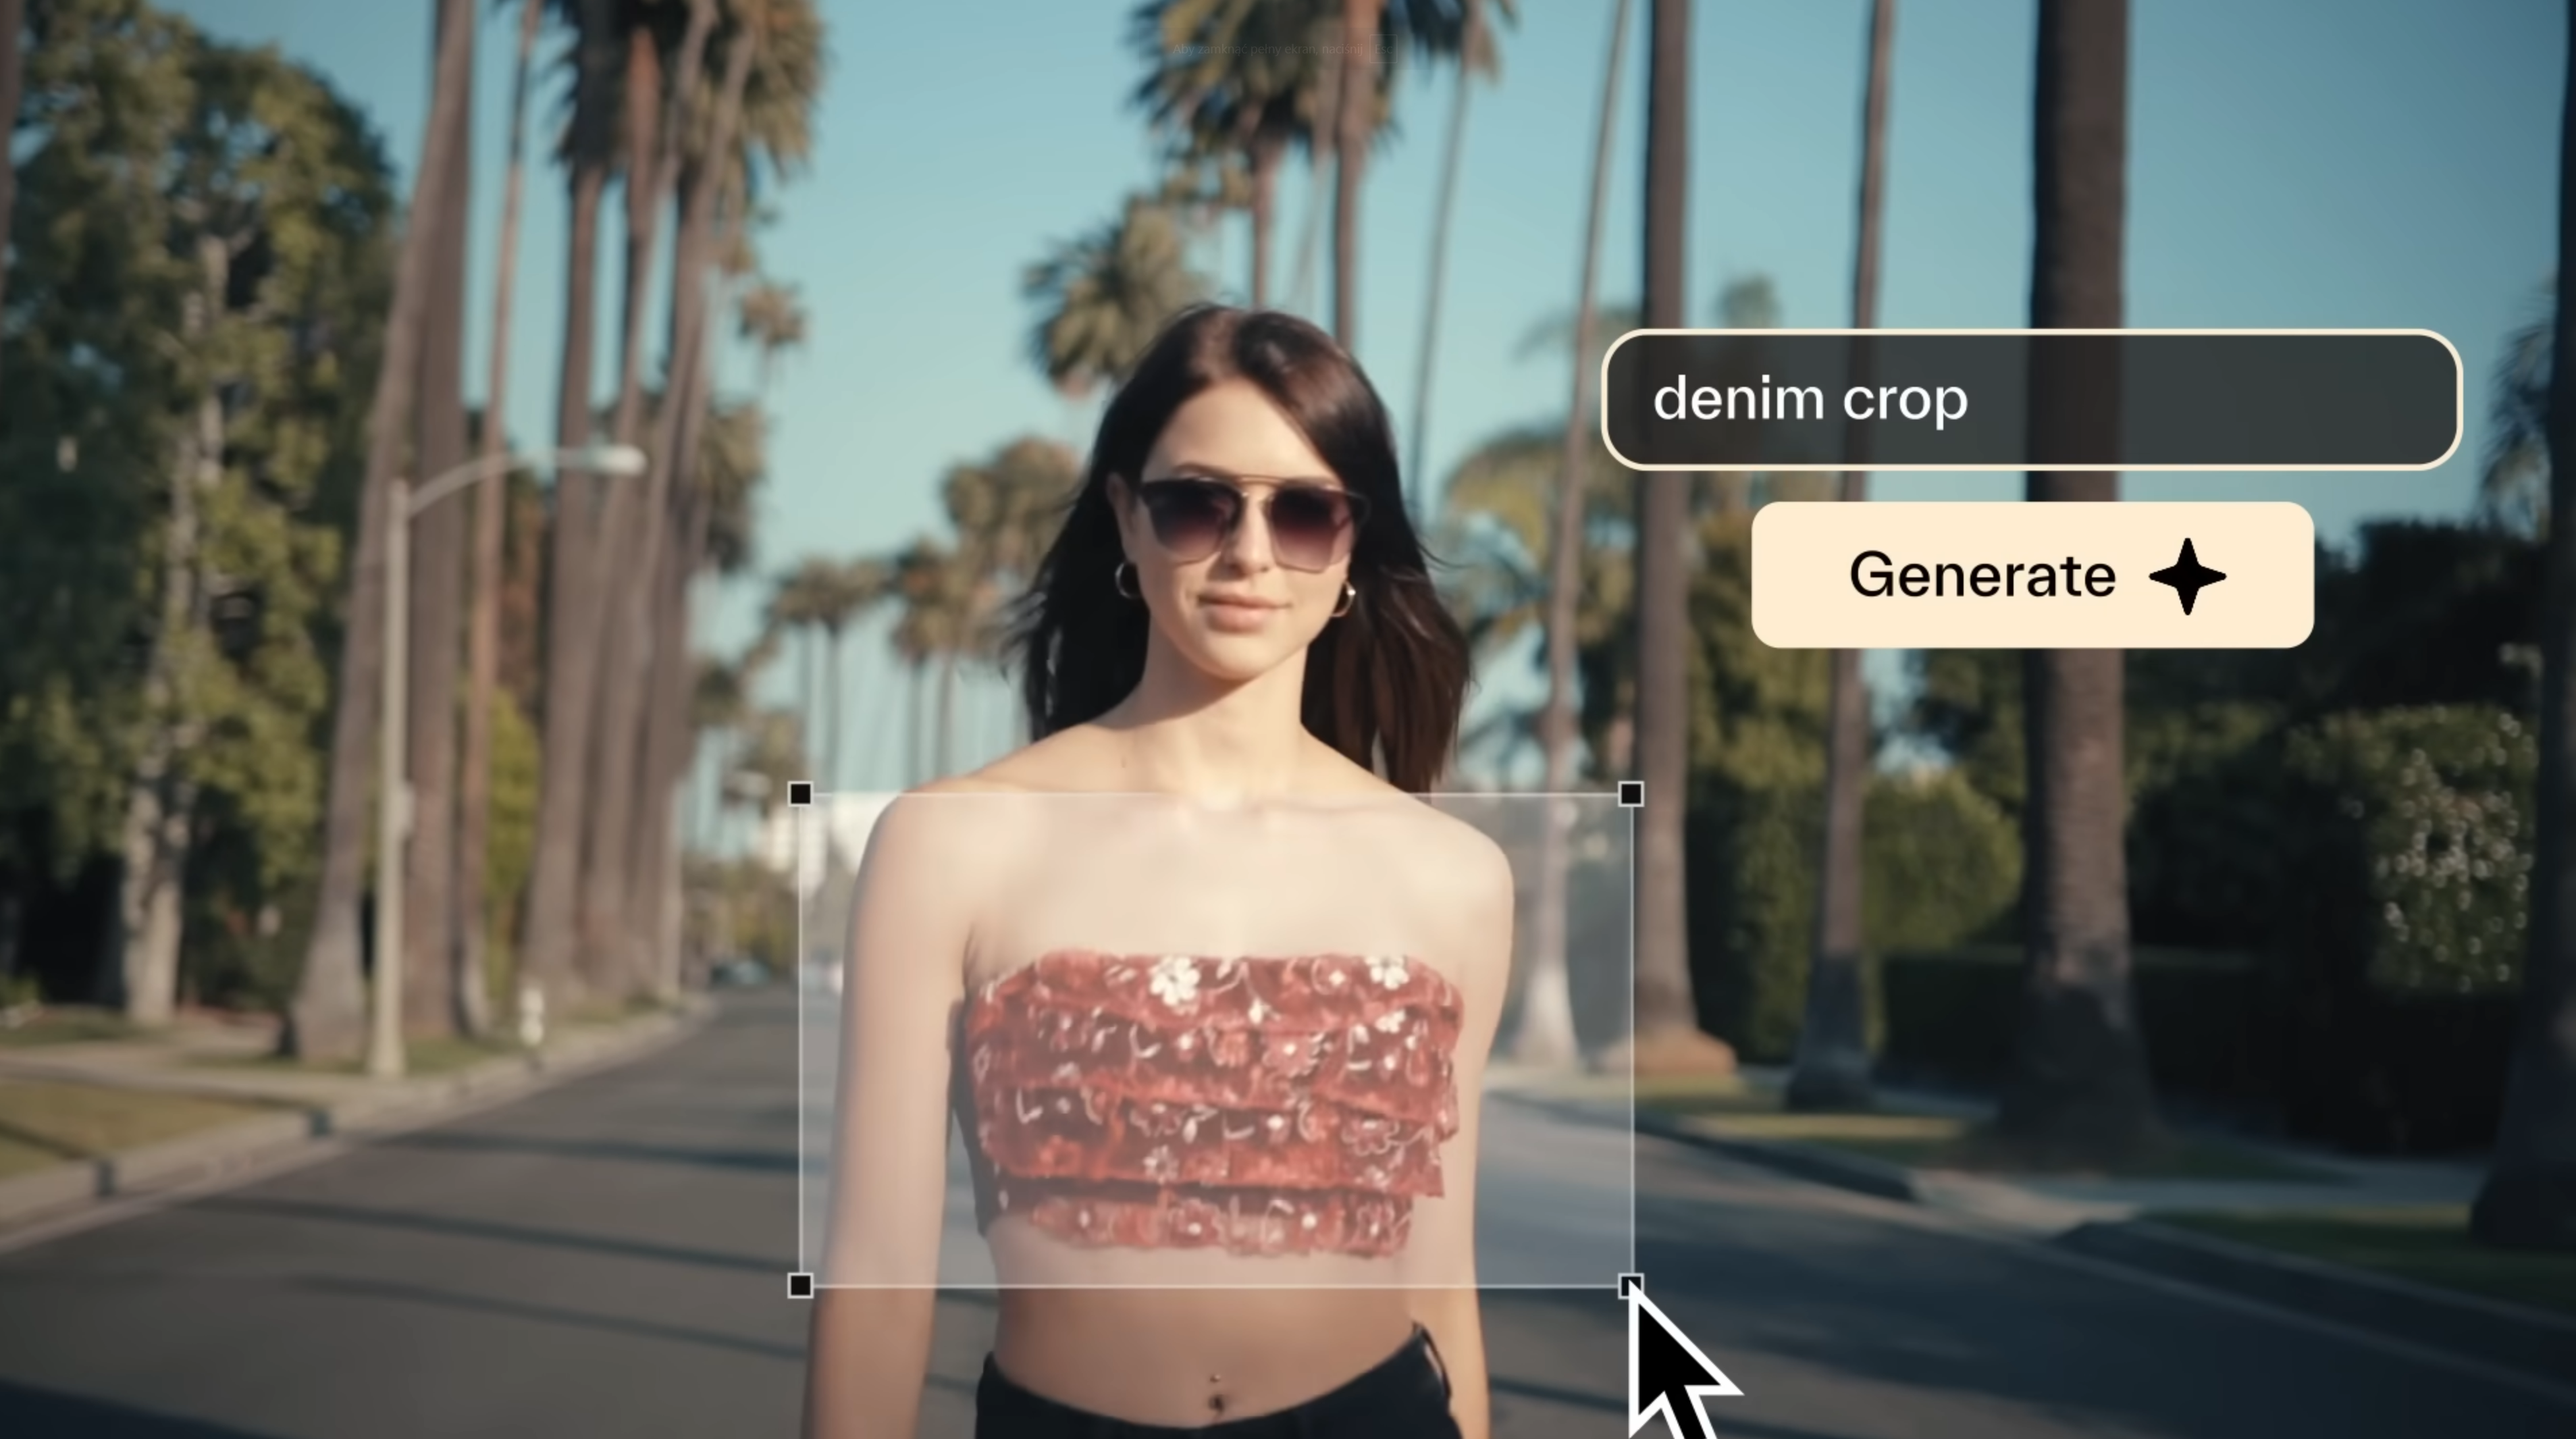 Młoda kobieta w okularach przeciwsłonecznych i czerwonym topie crop na tle ulicy z palmami. Na obrazie widoczny interfejs graficzny z napisem "denim crop" i przyciskiem "Generate".